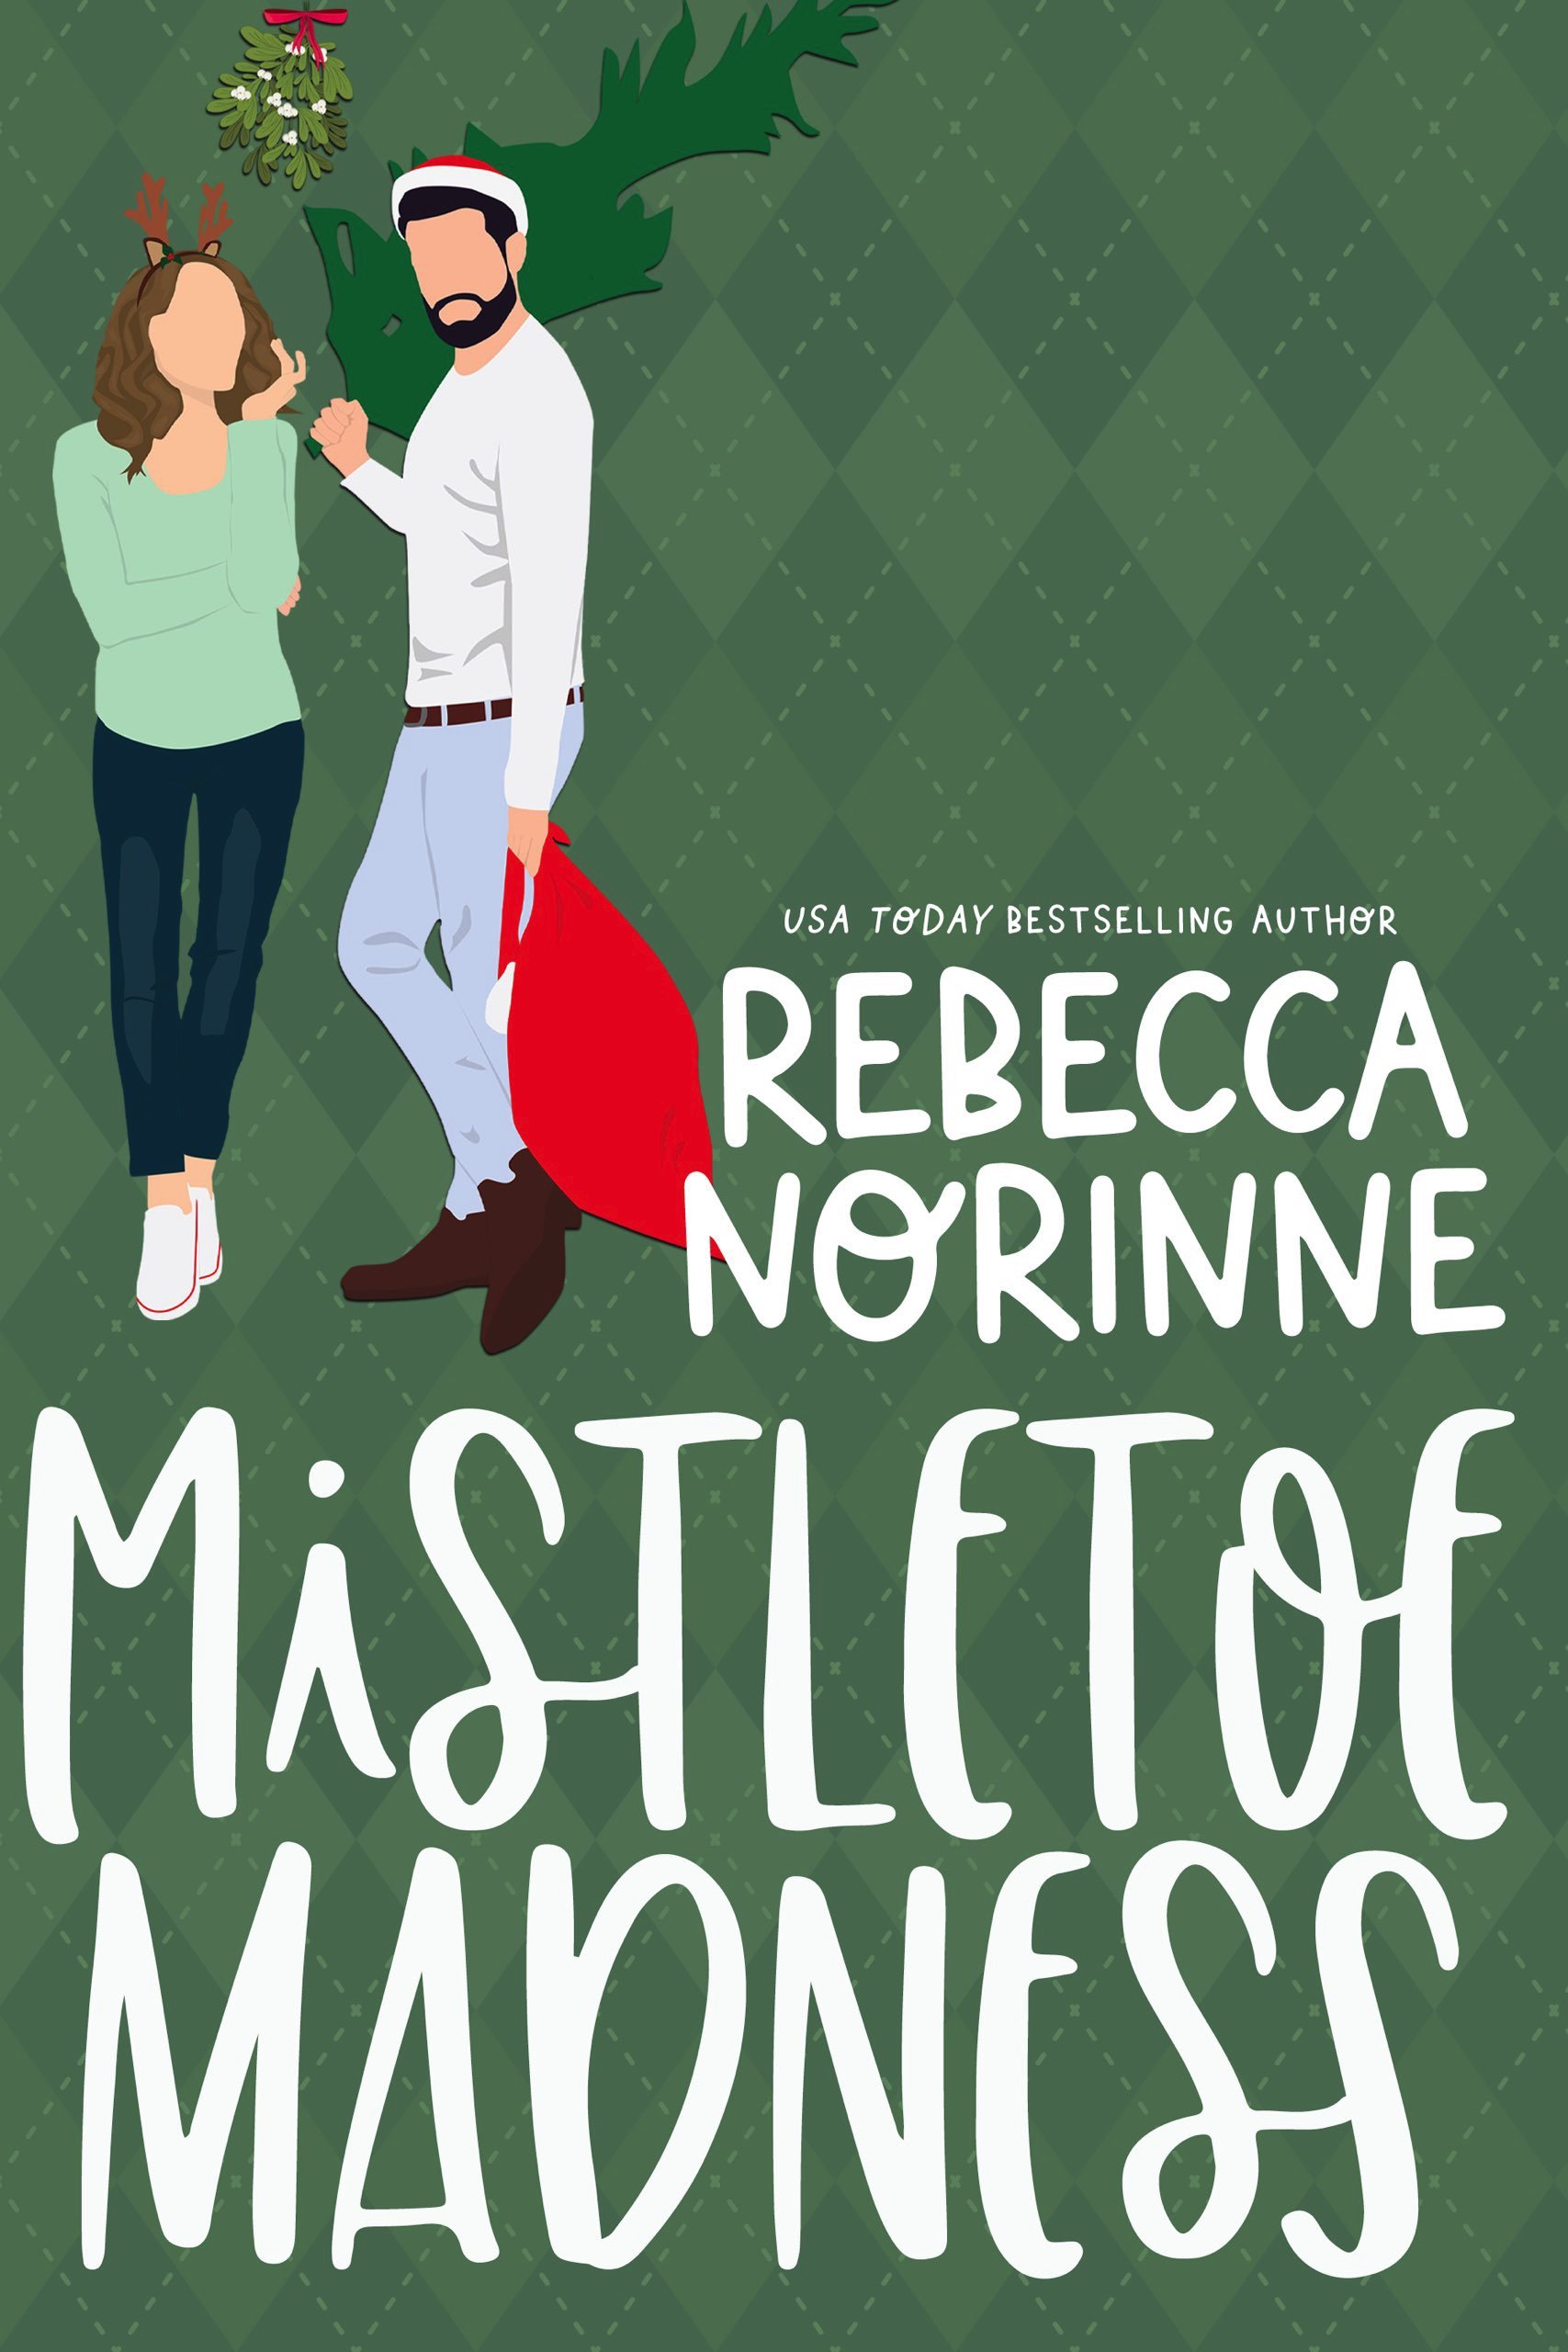 Mistletoe-Madness-Kindle.jpg